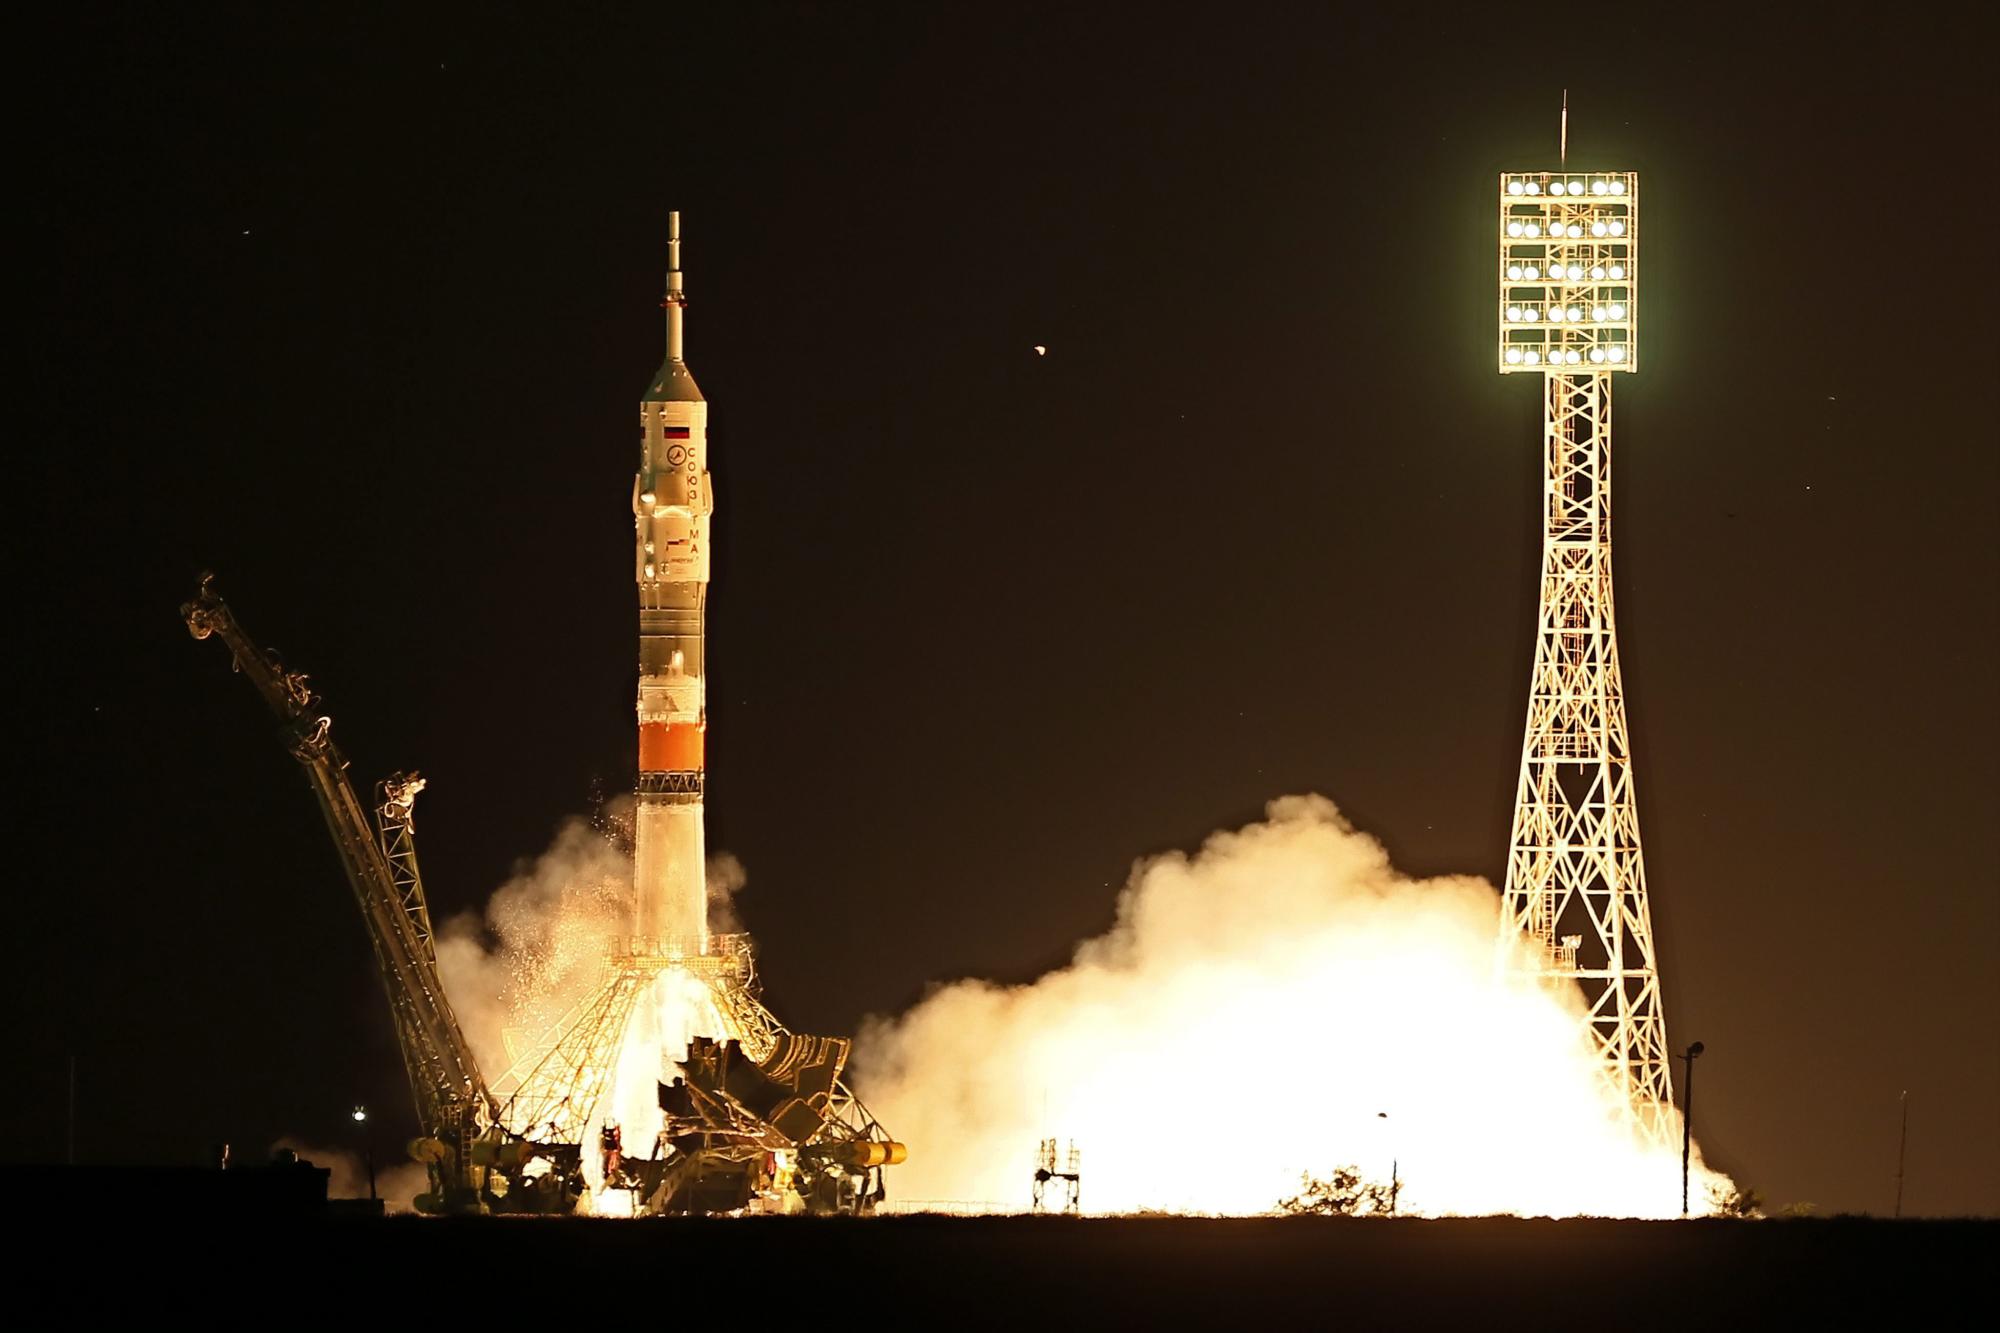 El cohete Soyuz TMA-17M despega hacia la Estación Espacial Internacional (ISS) hoy, miércoles 22 de julio de 2015, en el cosmódromo de Baikonur (Kasajistán). El Soyuz llega a los integrantes del grupo principal de la expedición 44/45 a la Estación Espacial Internacional (ISS), el astronauta de la NASA Kjell Lindgren, el astronauta japonés Kimiya Yui y el cosmonauta ruso Oleg Kononenko.